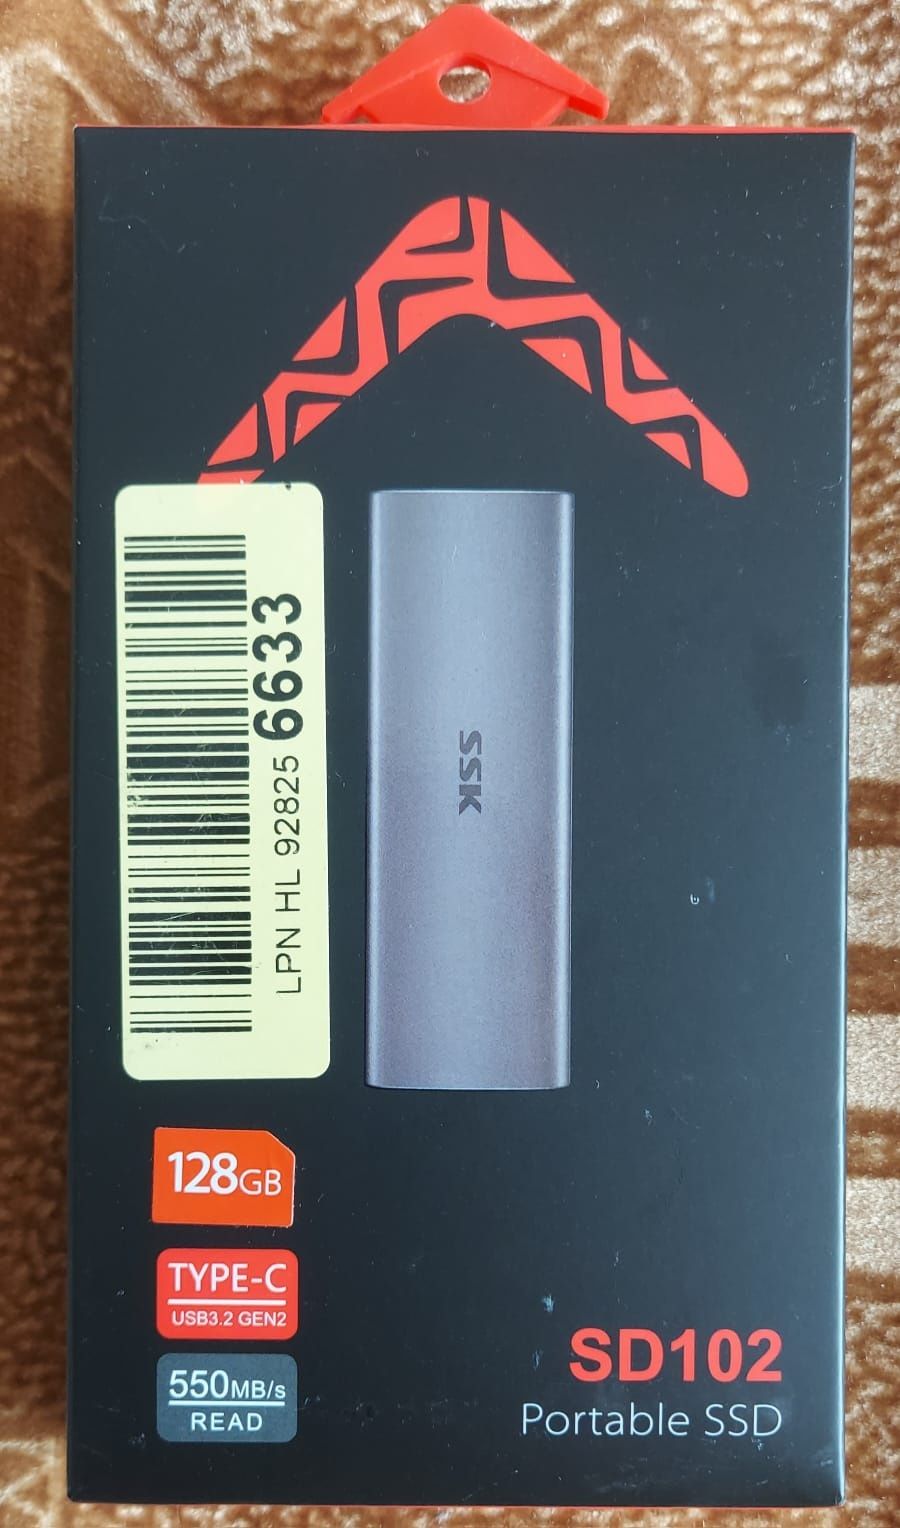 SSD portabil, SSK 128